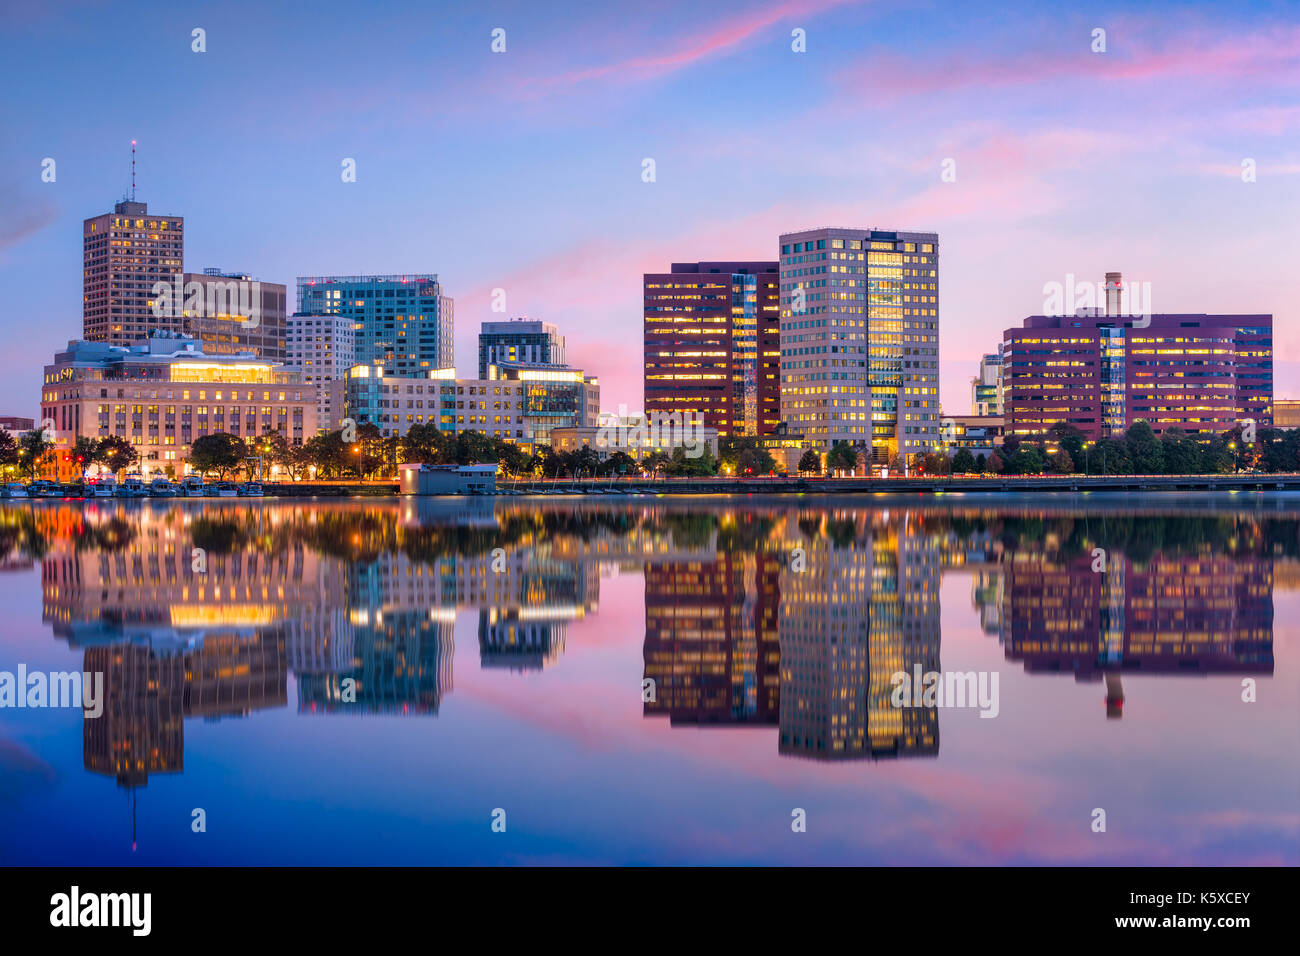 Cambridge, Massachusetts, USA skyline at twilight. Stock Photo